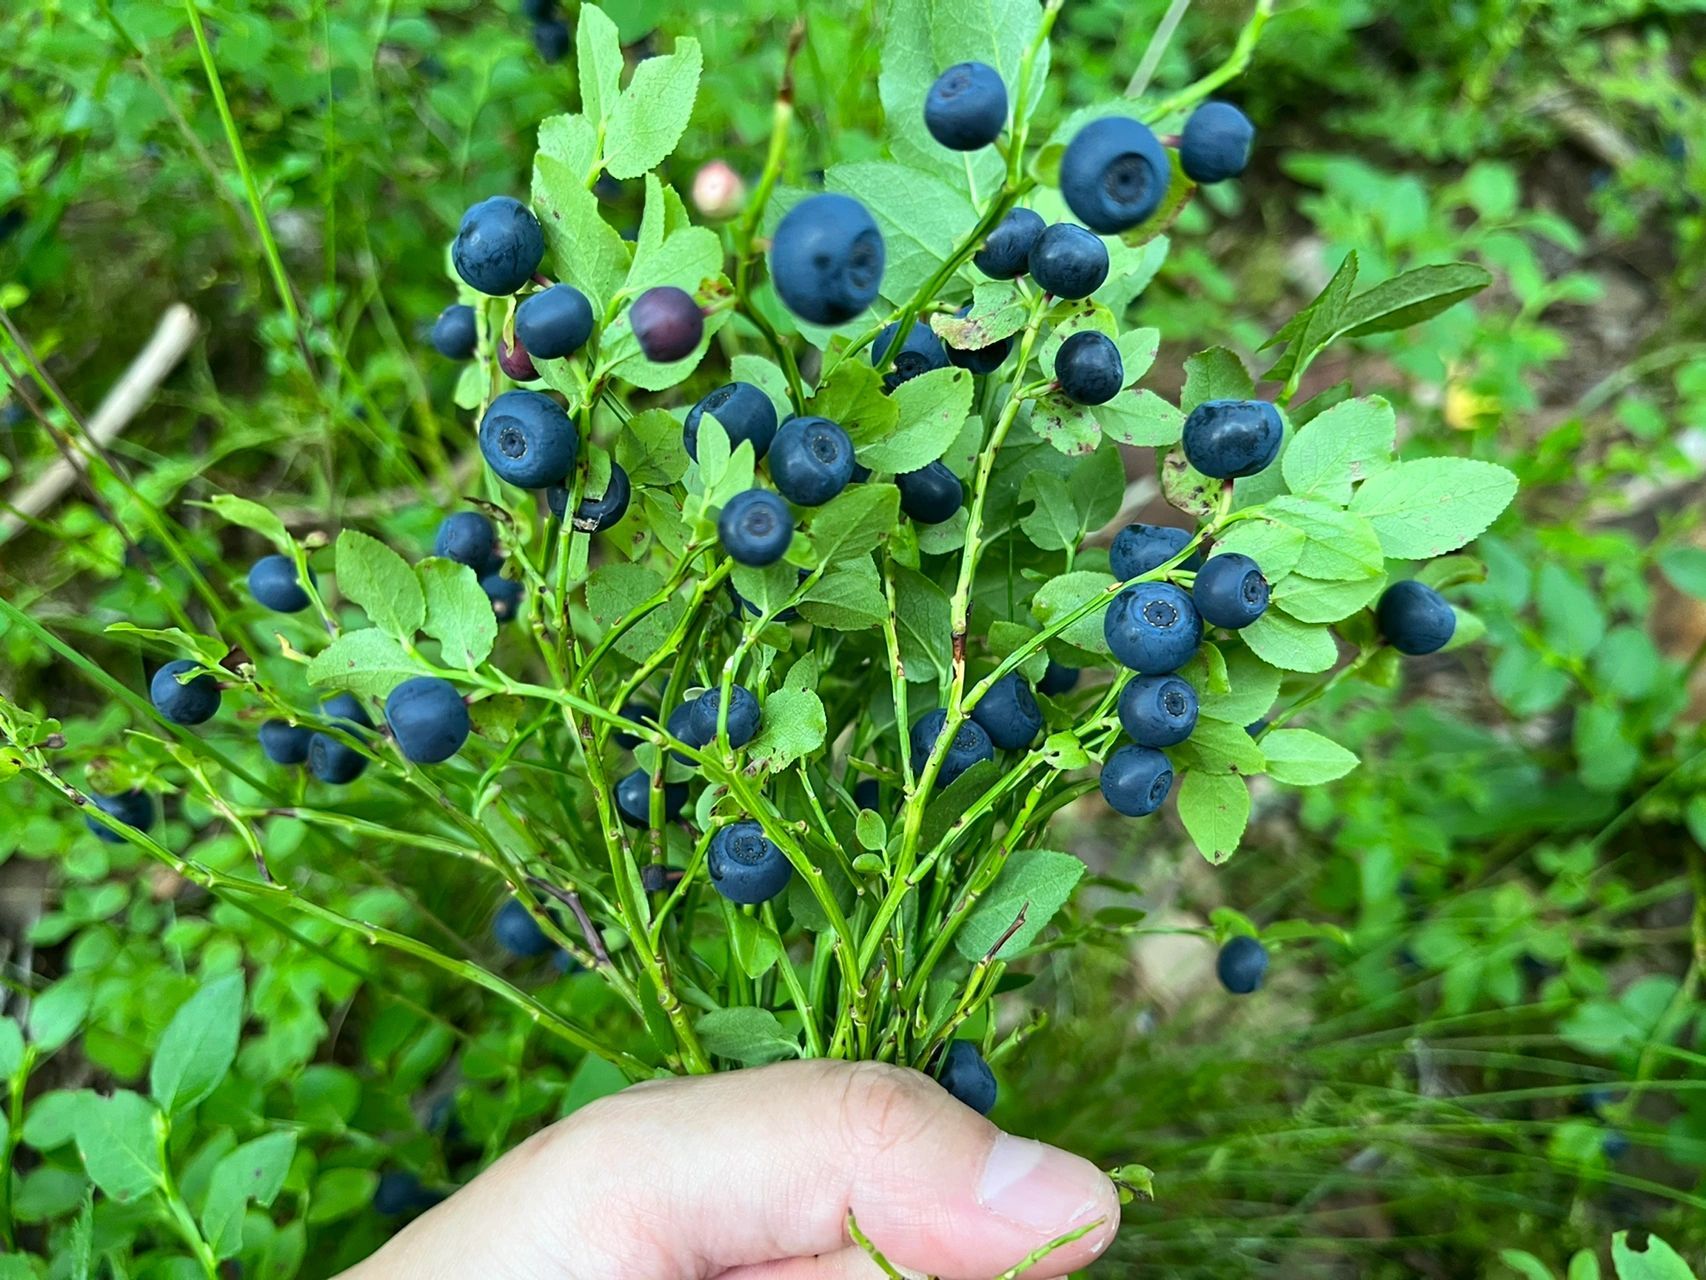 今年的野蓝莓大丰收了  昨天看到超市门口卖野蓝莓了 7欧一斤 就是49